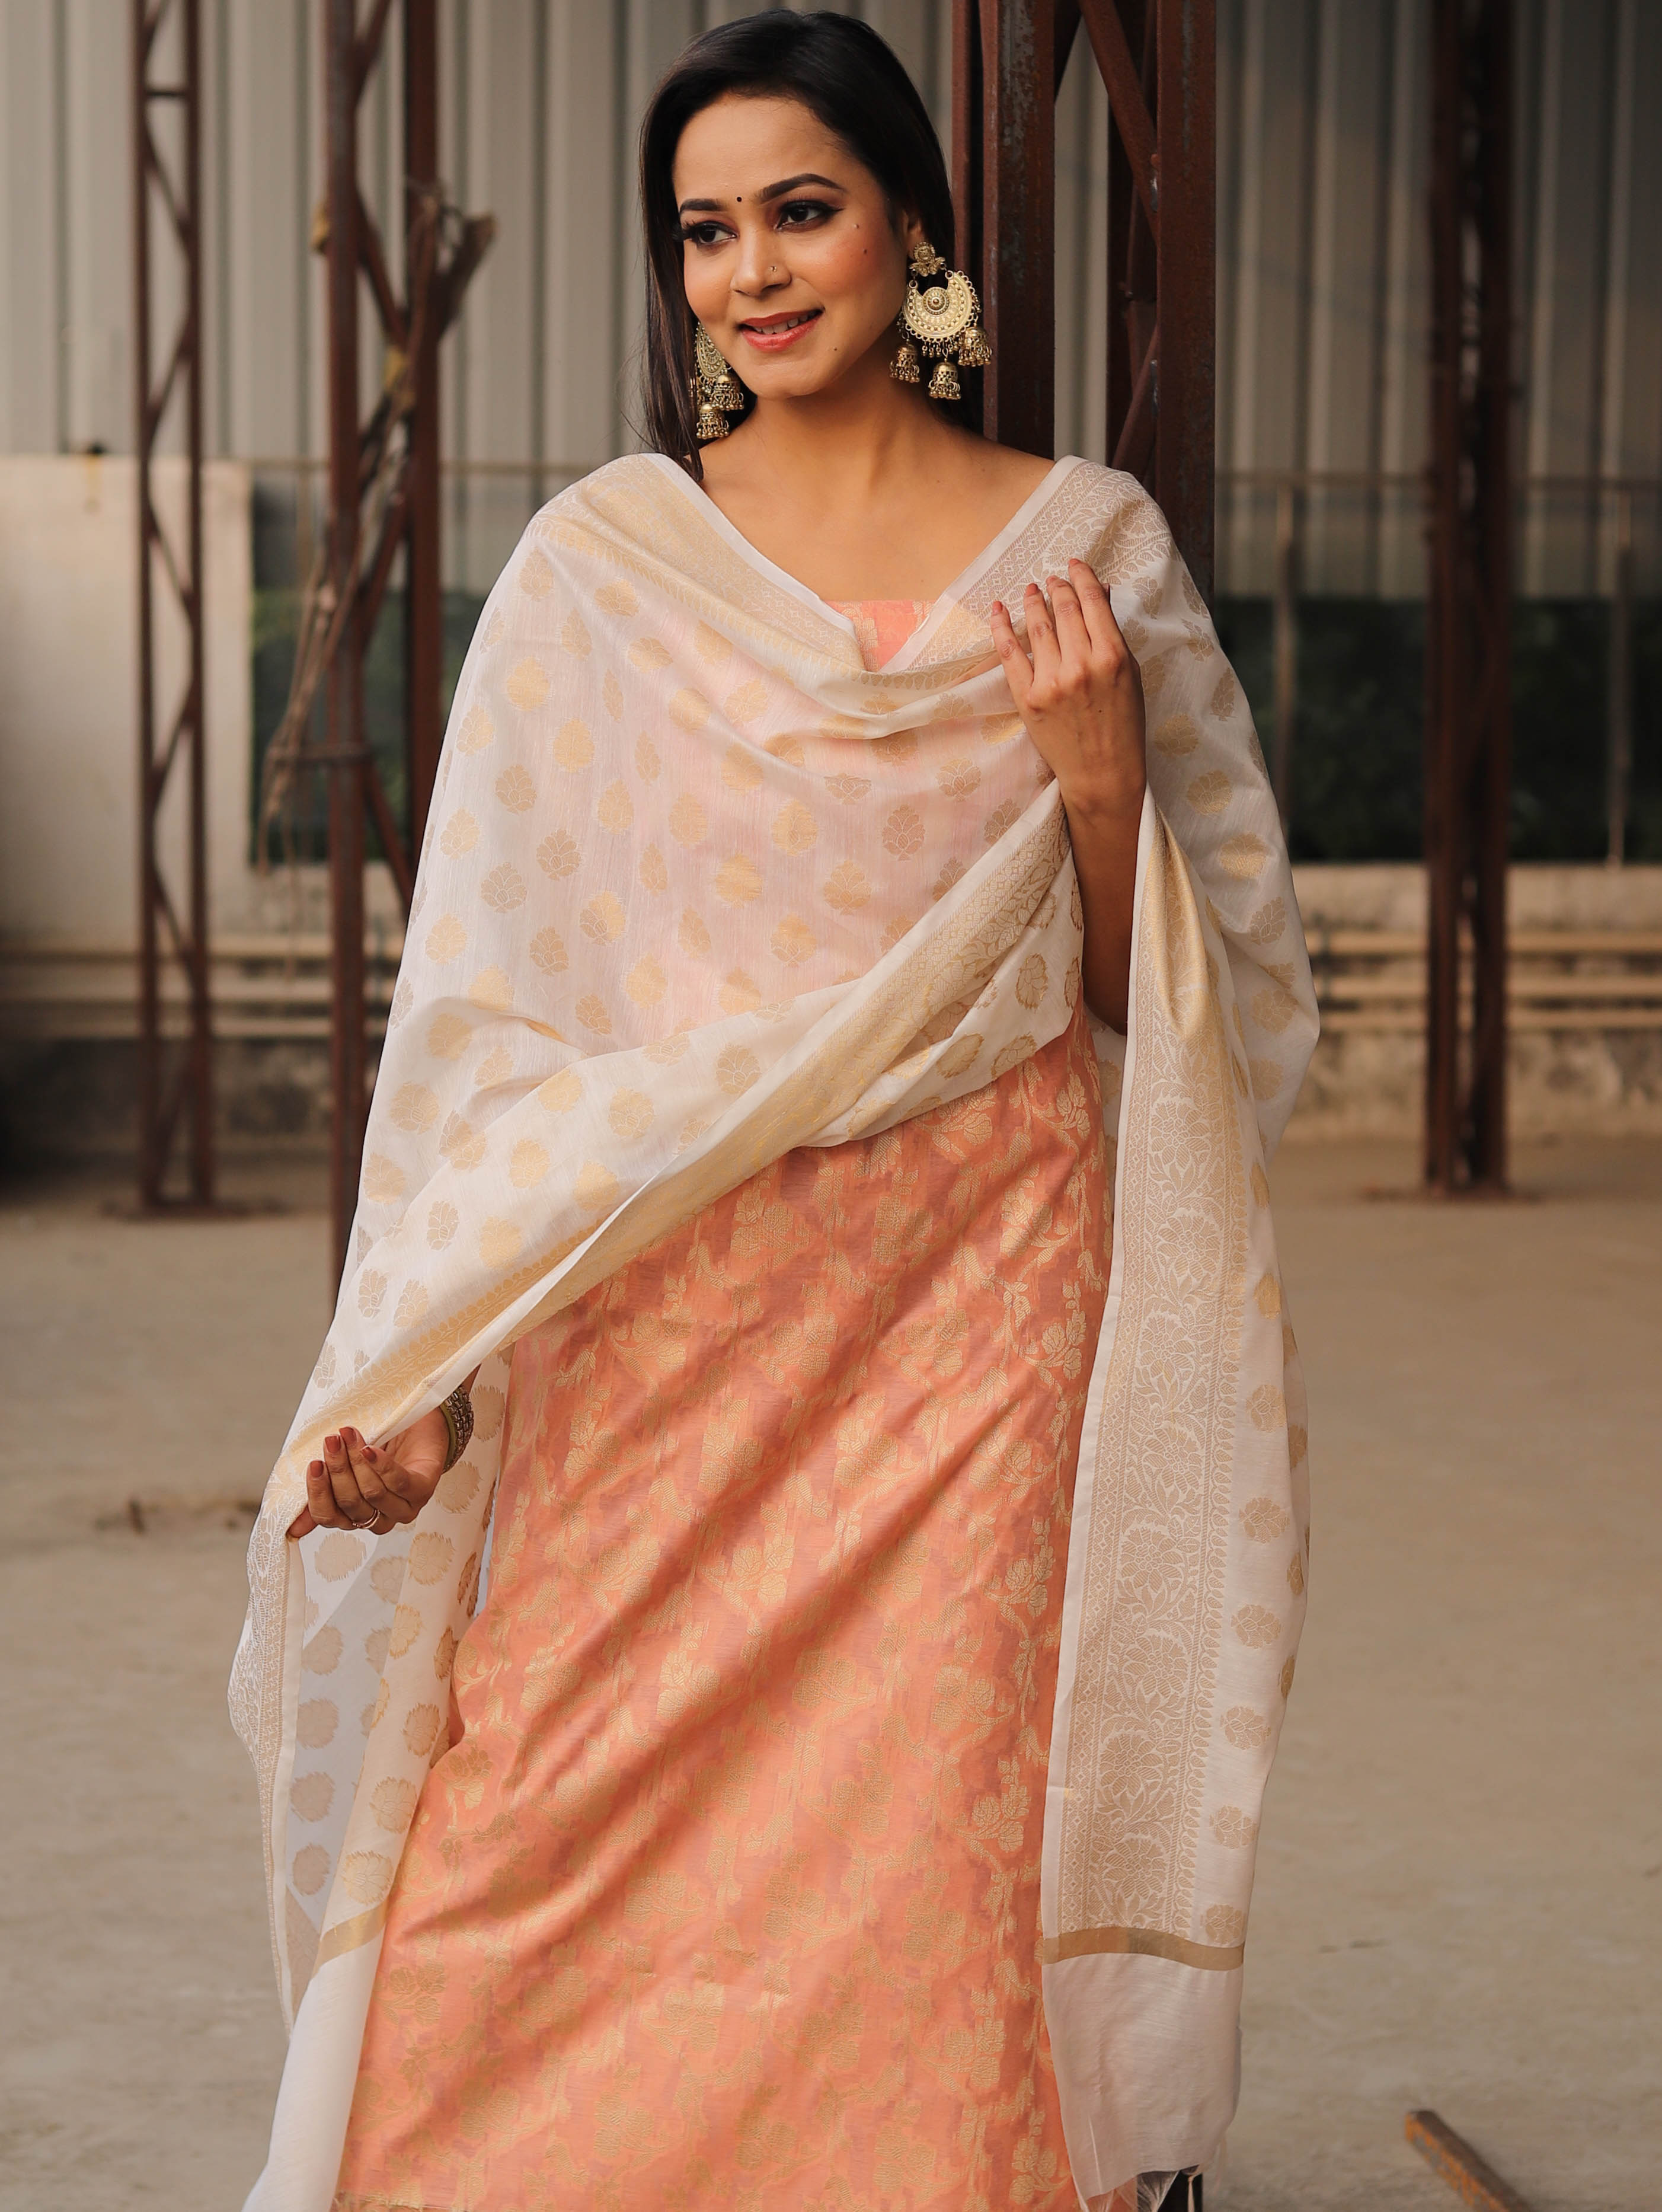 Banarasee Chanderi Cotton Salwar Kameez Set With Zari Work-Peach & White